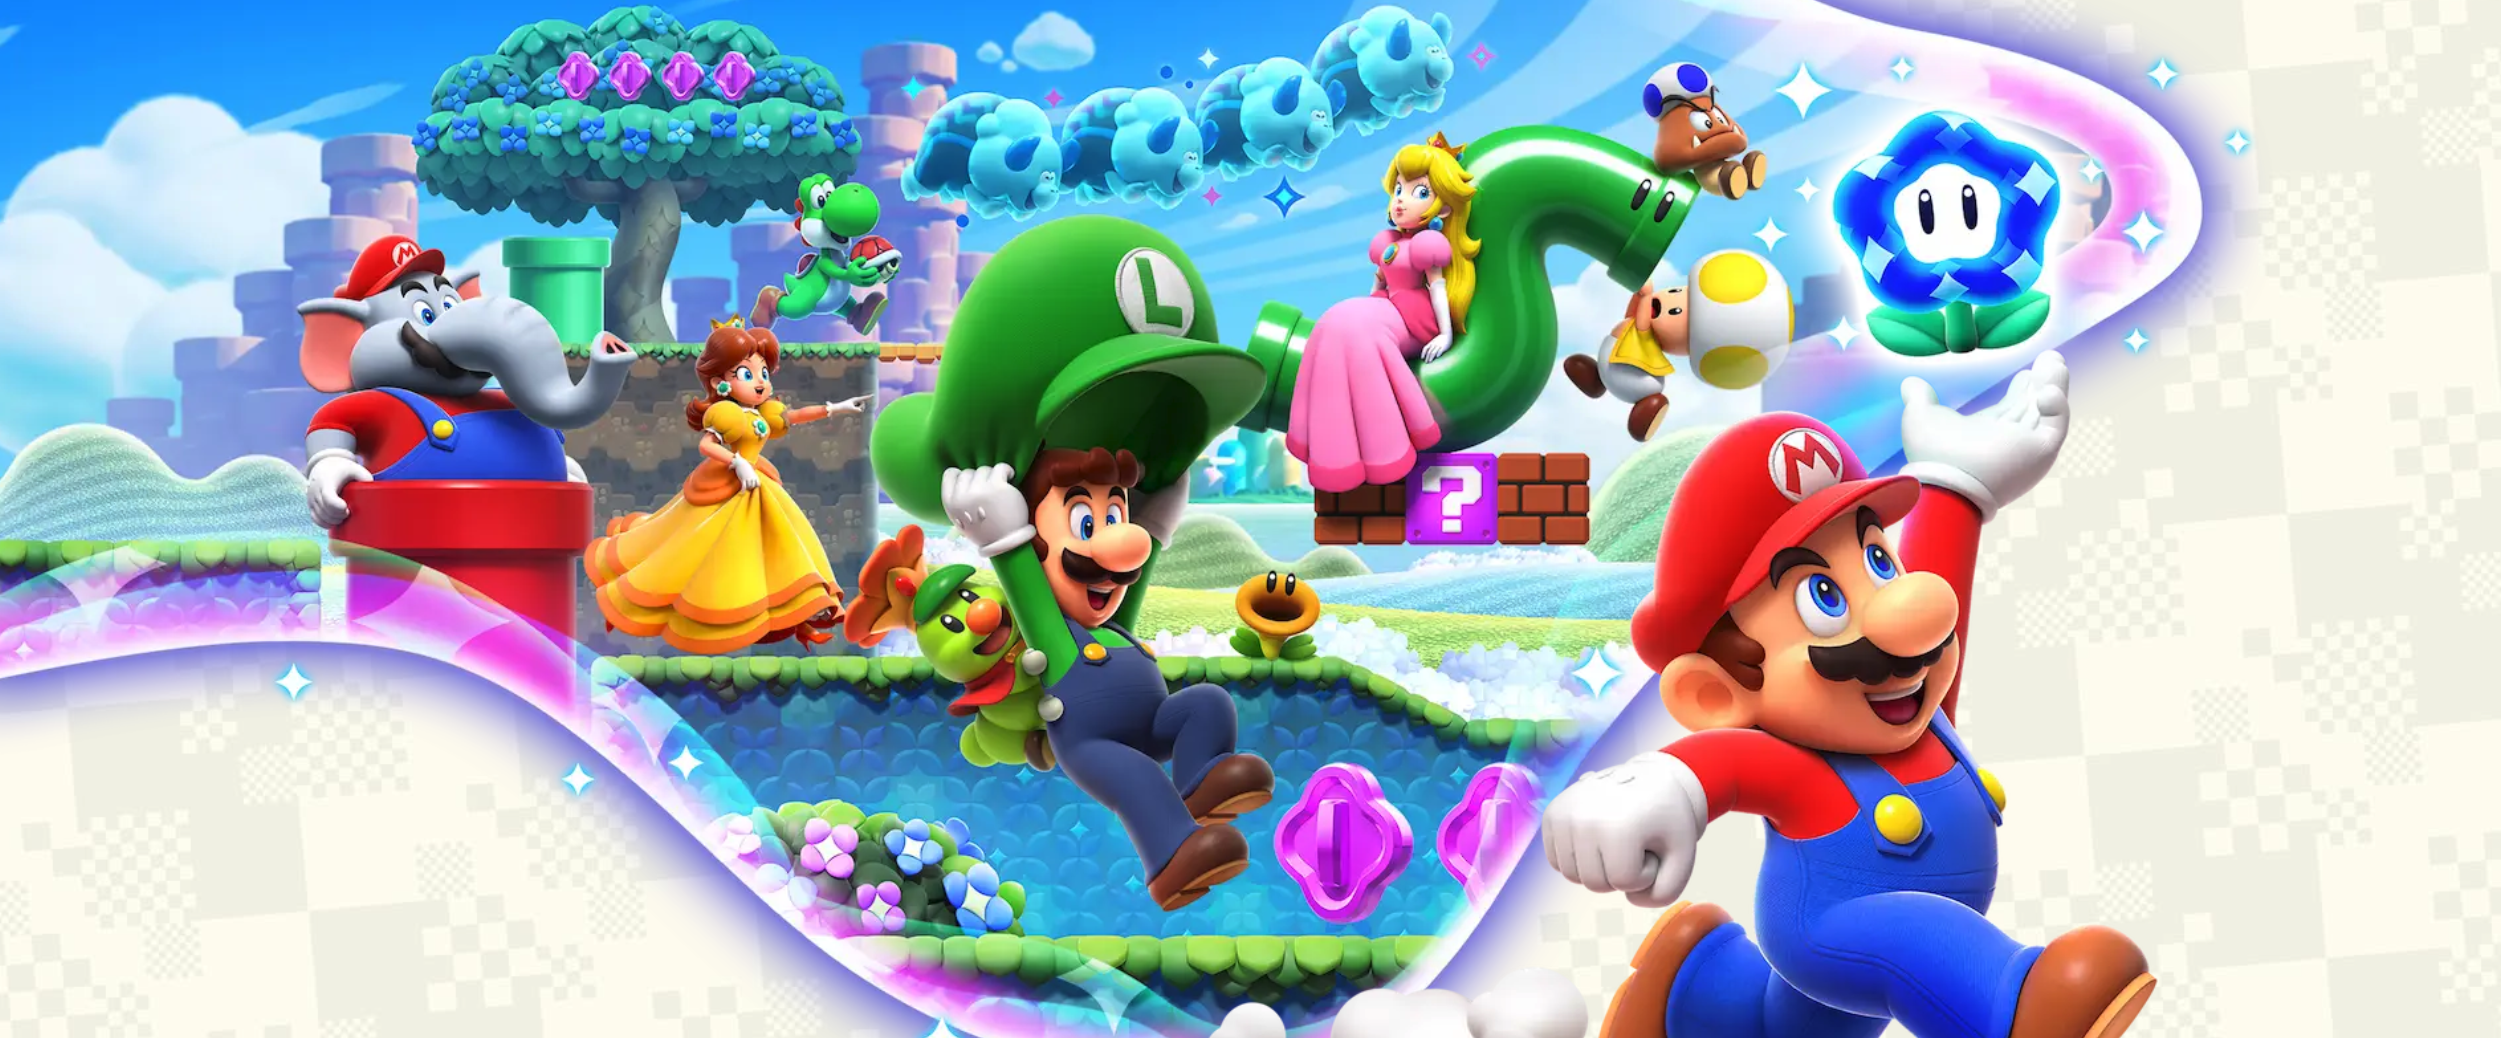 Jeux vidéo. Sortie de Super Mario Wonder sur Switch : on l'a testé